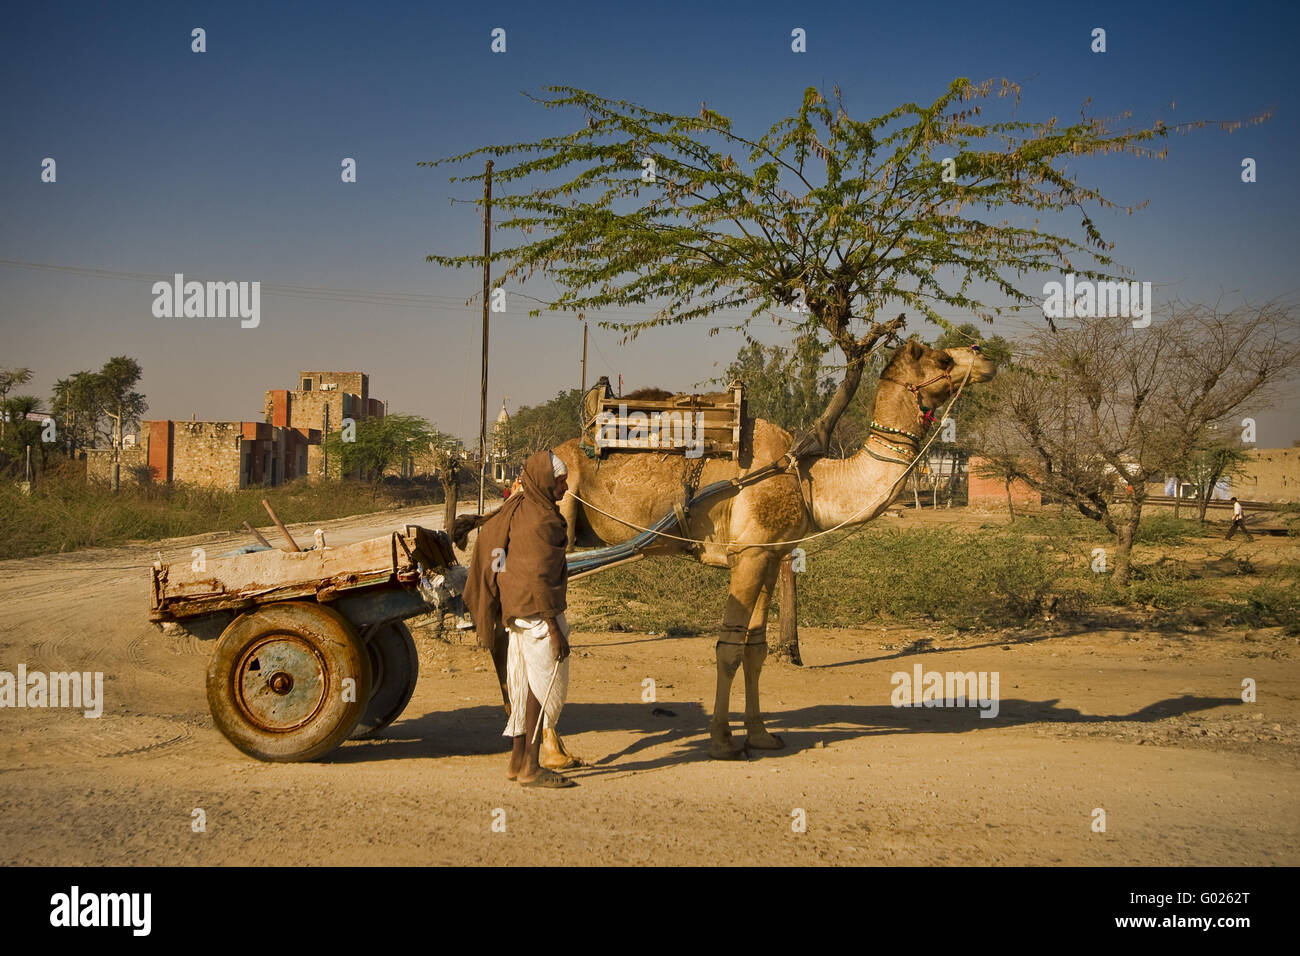 Camel avec remorque sur une rue, l'Inde du Nord, Inde, Asie Banque D'Images